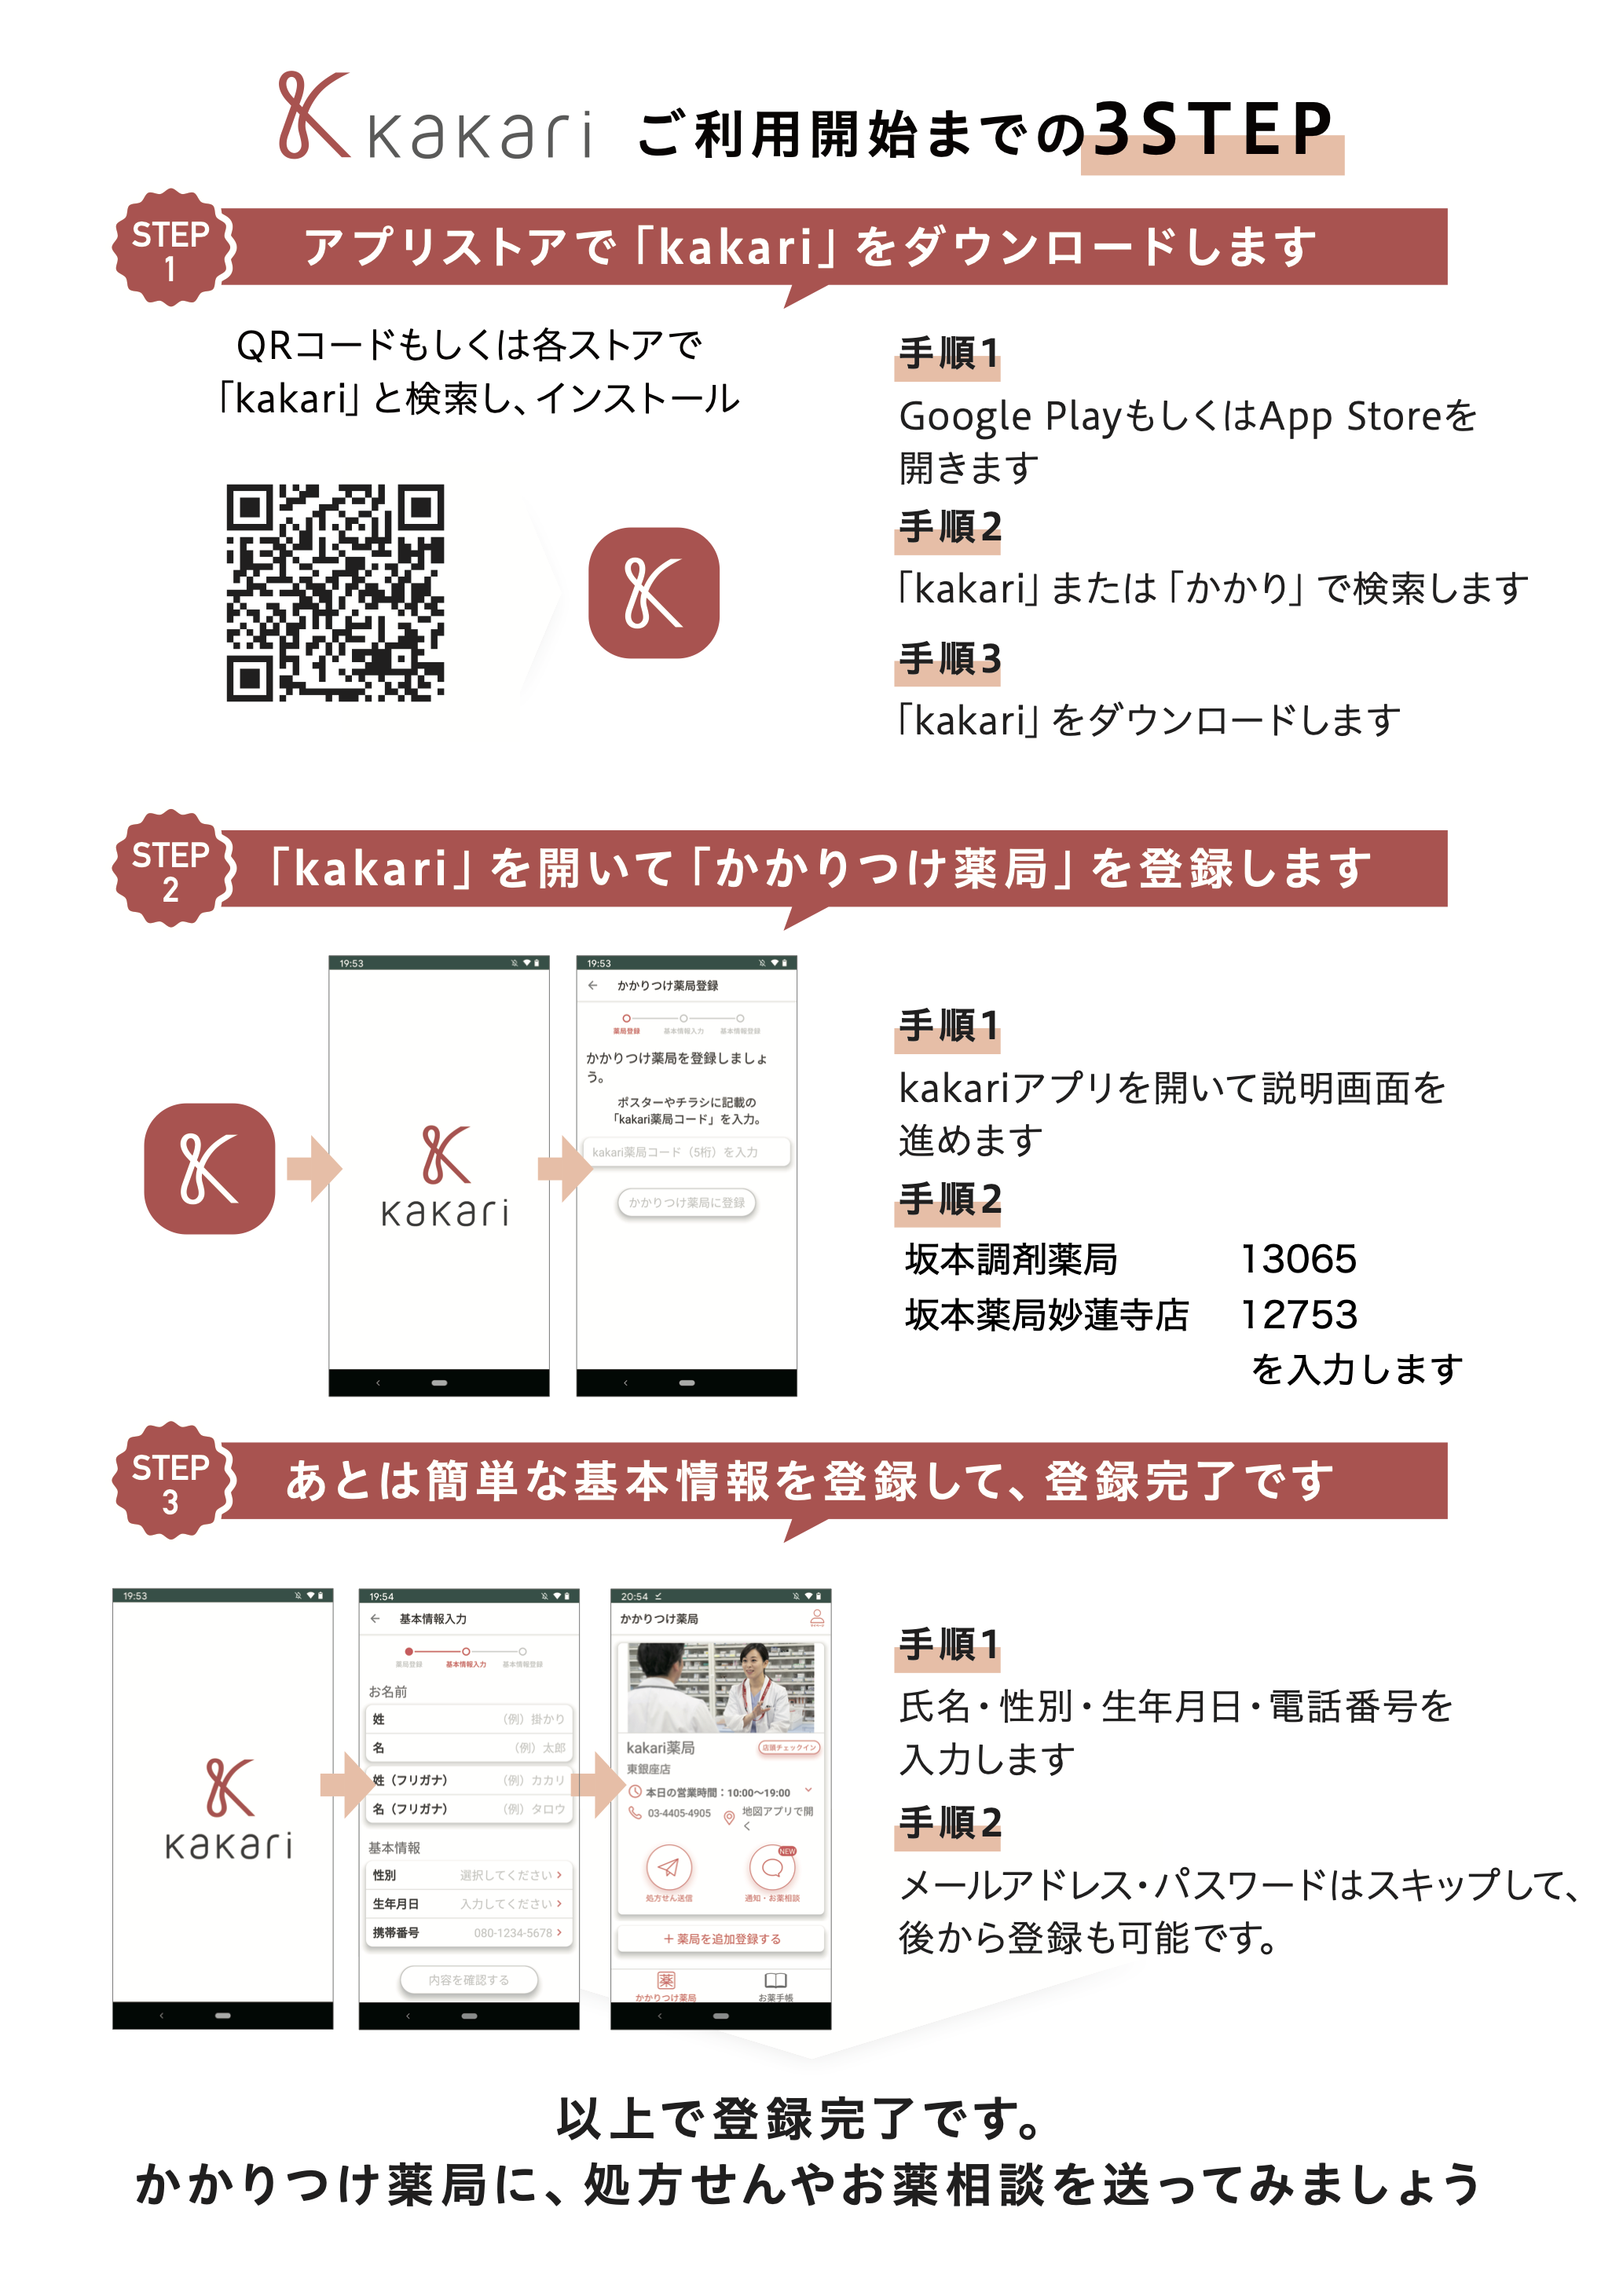 処方せん送信&お薬手帳アプリ(Kakari)の登録方法